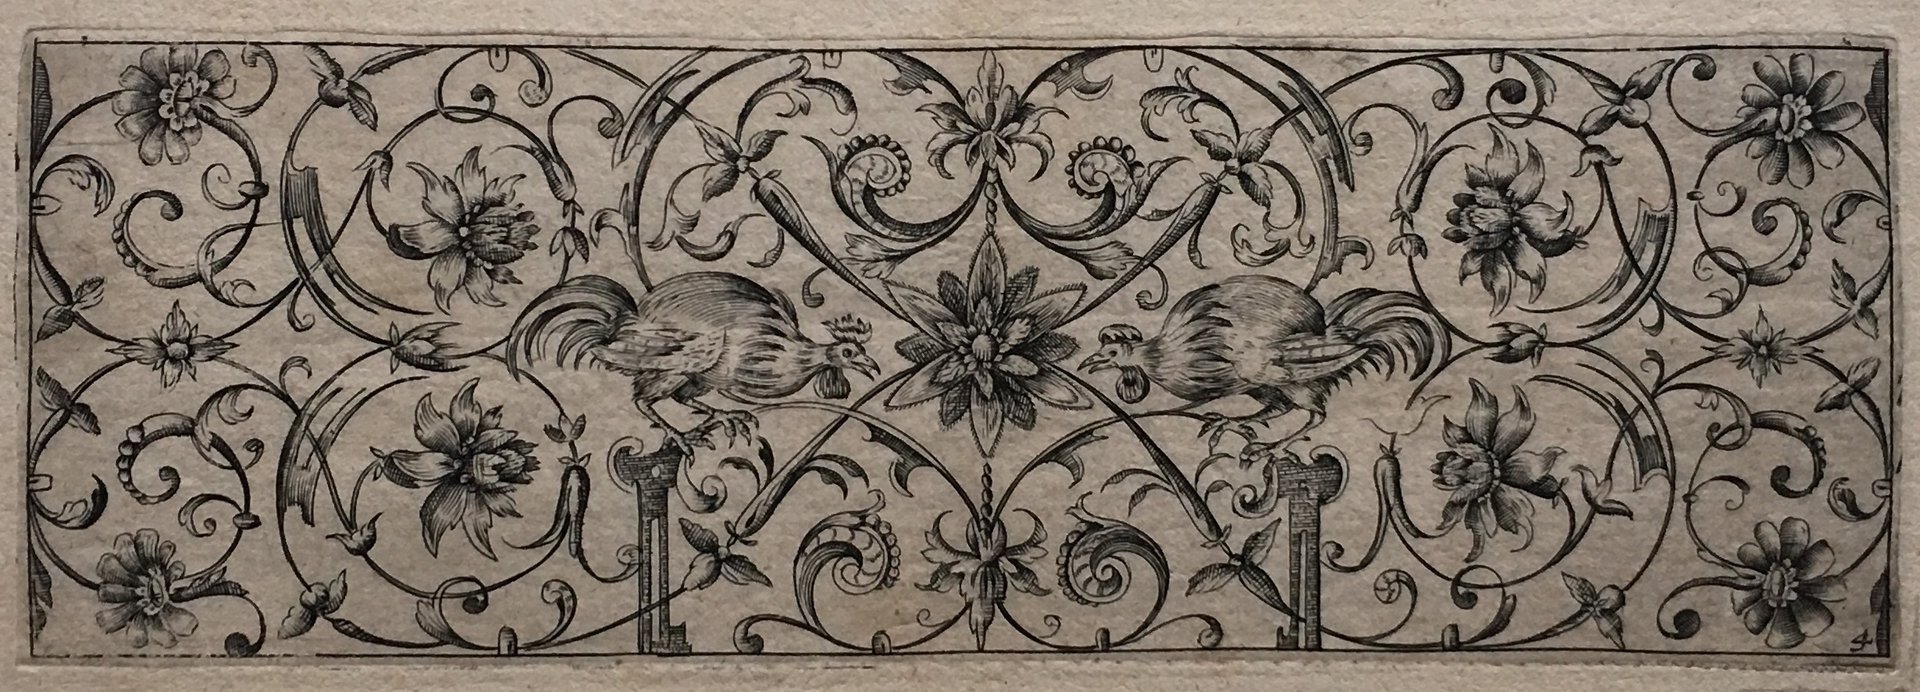 Hieronymus Bang (1553-1630)